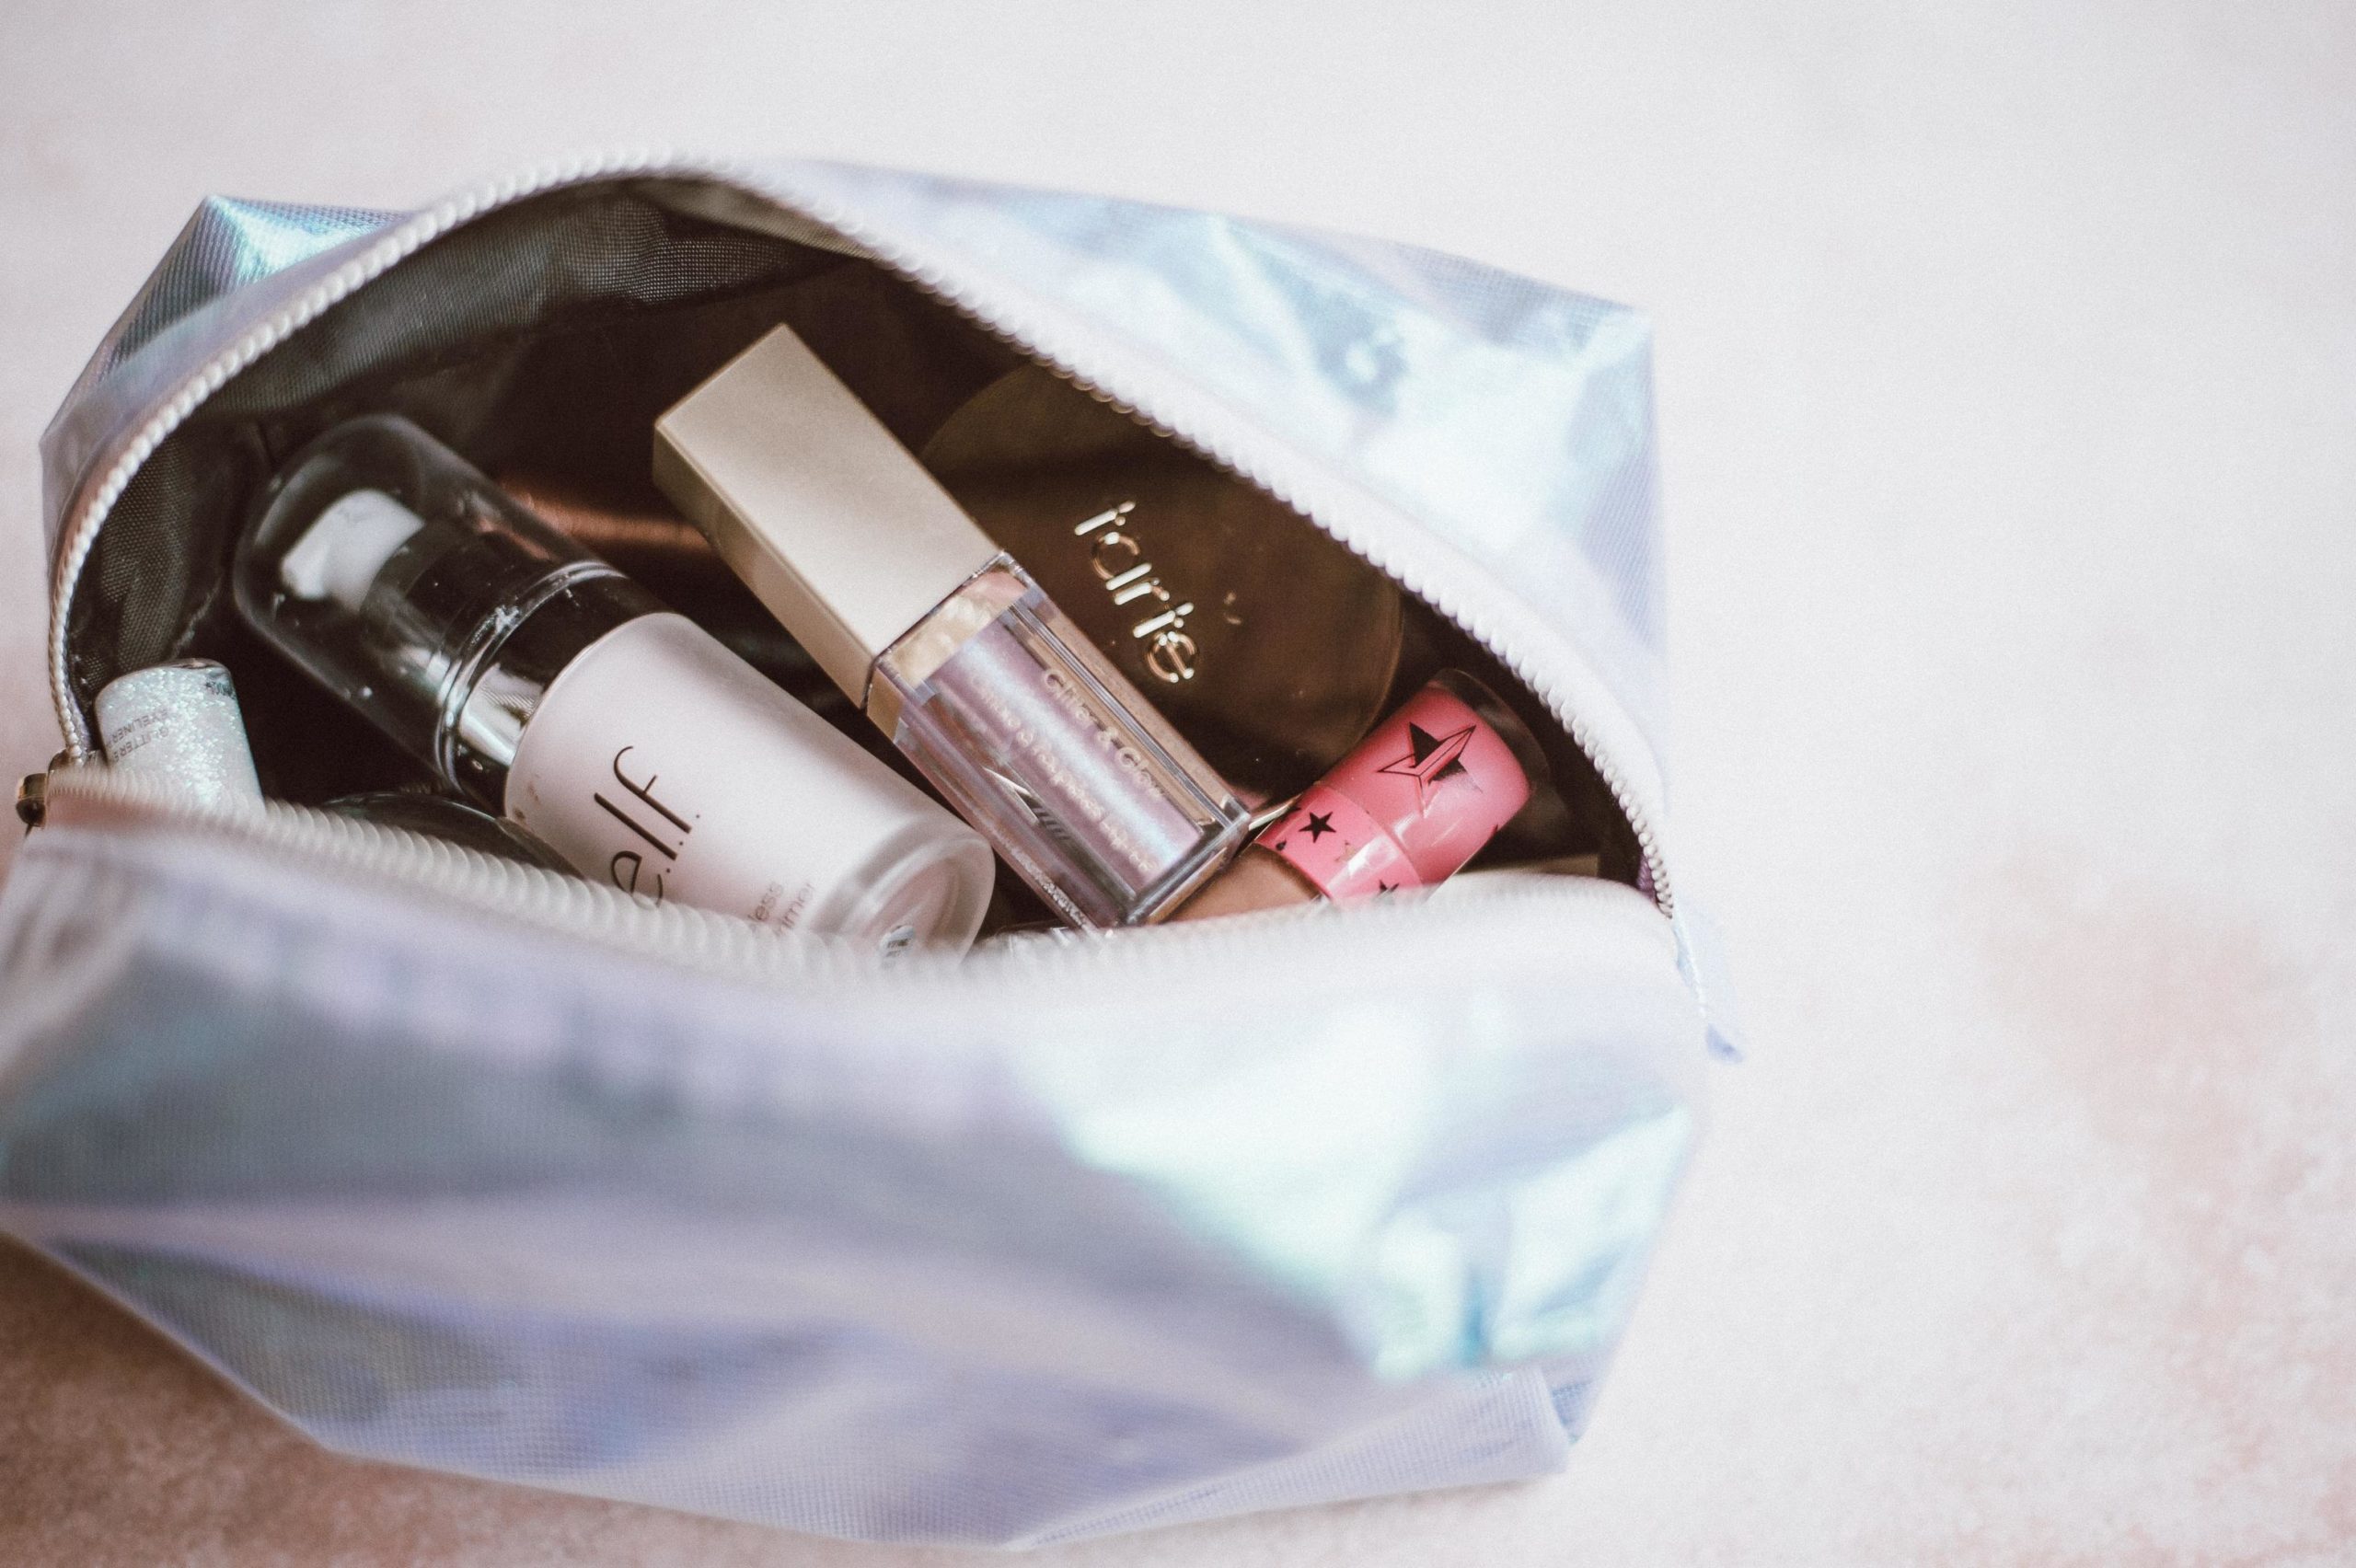 Makeup bag filled with makeup